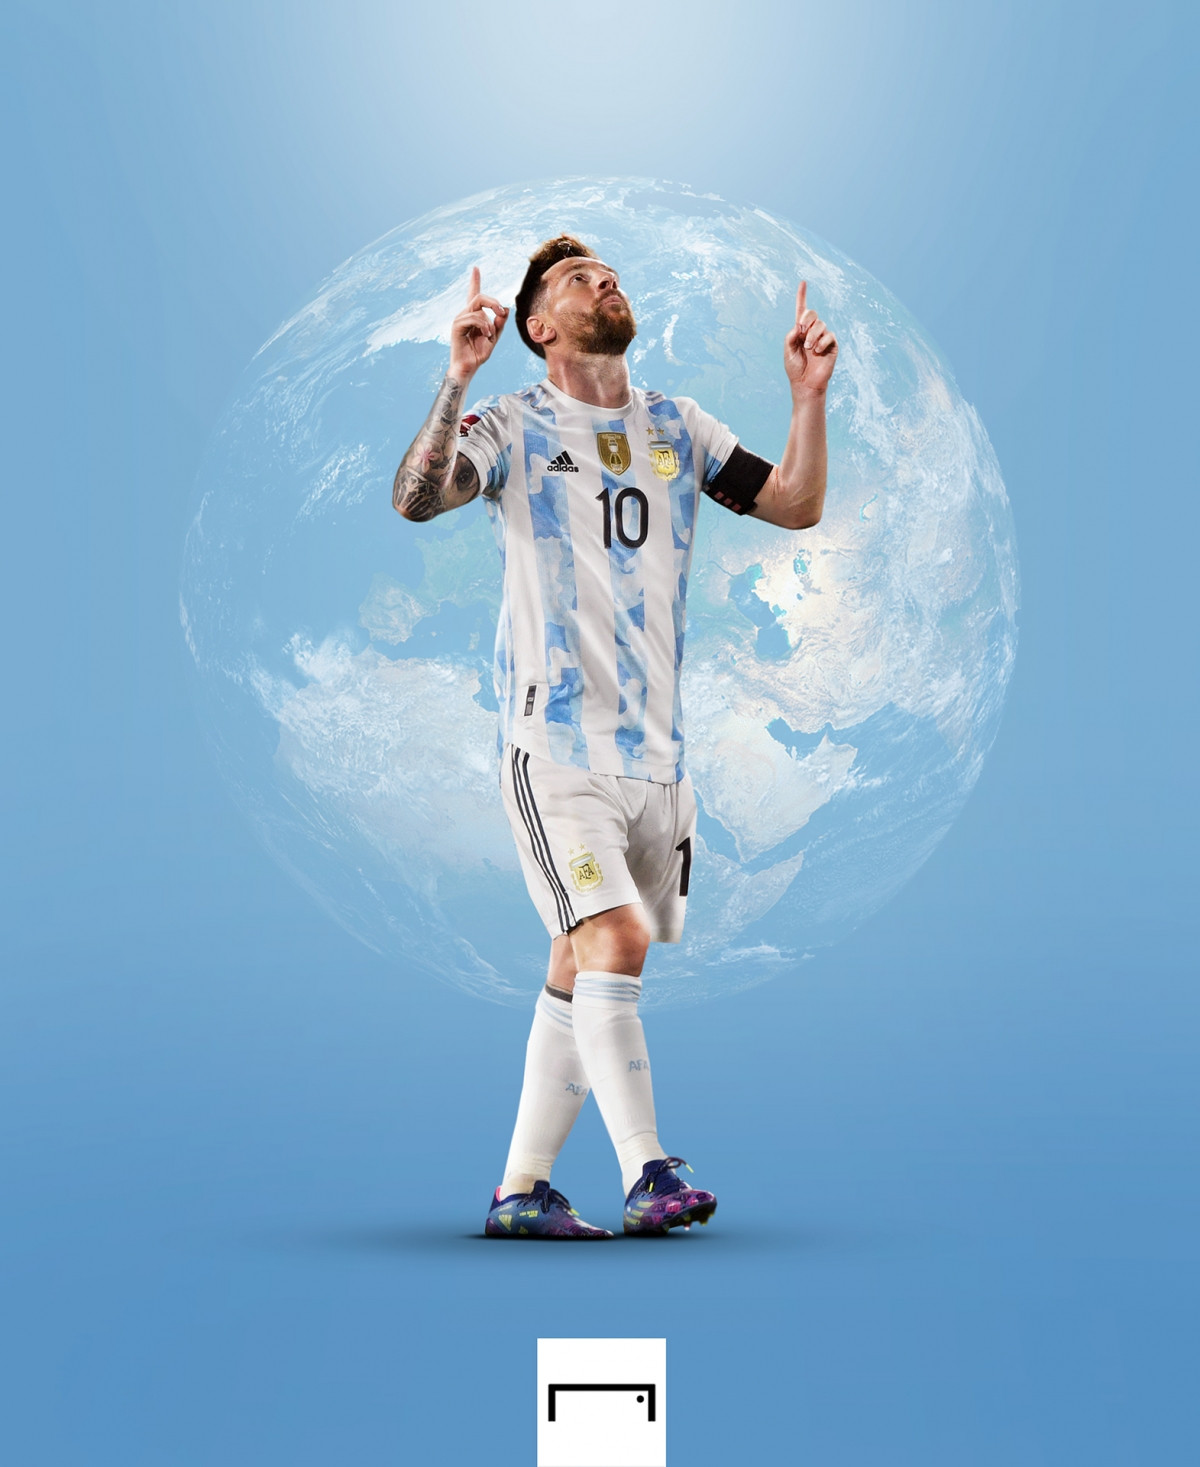 Messi và kỷ lục vô địch của Argentina! Không thể phủ nhận rằng Messi là một trong những cầu thủ xuất sắc nhất của Argentina. Hình ảnh kỷ lục bất bại của anh ta cùng đội bóng quốc gia sẽ đưa bạn vào thế giới của Messi - nơi mà anh ta đạt được những thành công tuyệt vời cho đất nước của mình.